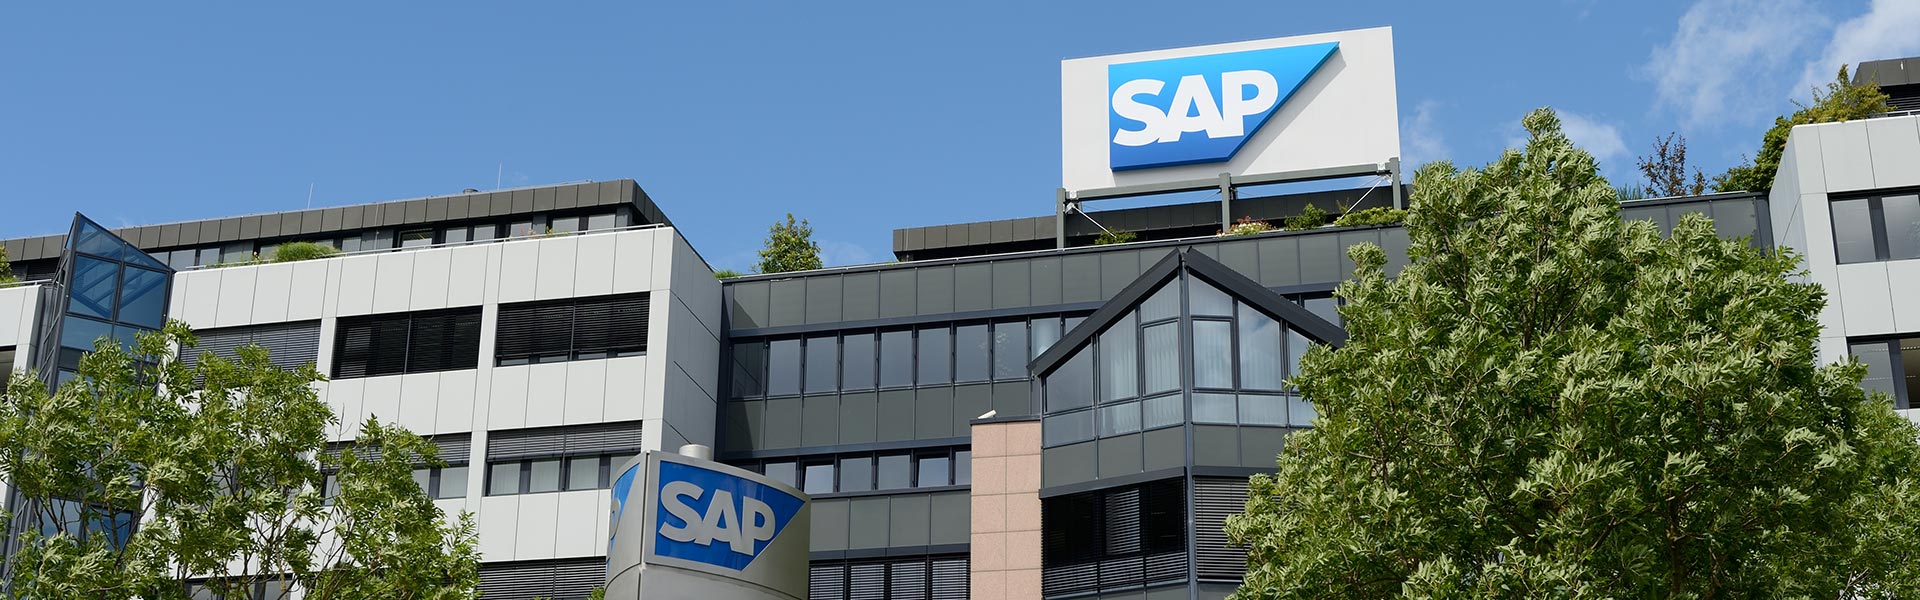 SAP annuncia un’offerta fondamentale per rivoluzionare la trasformazione del business dei clienti